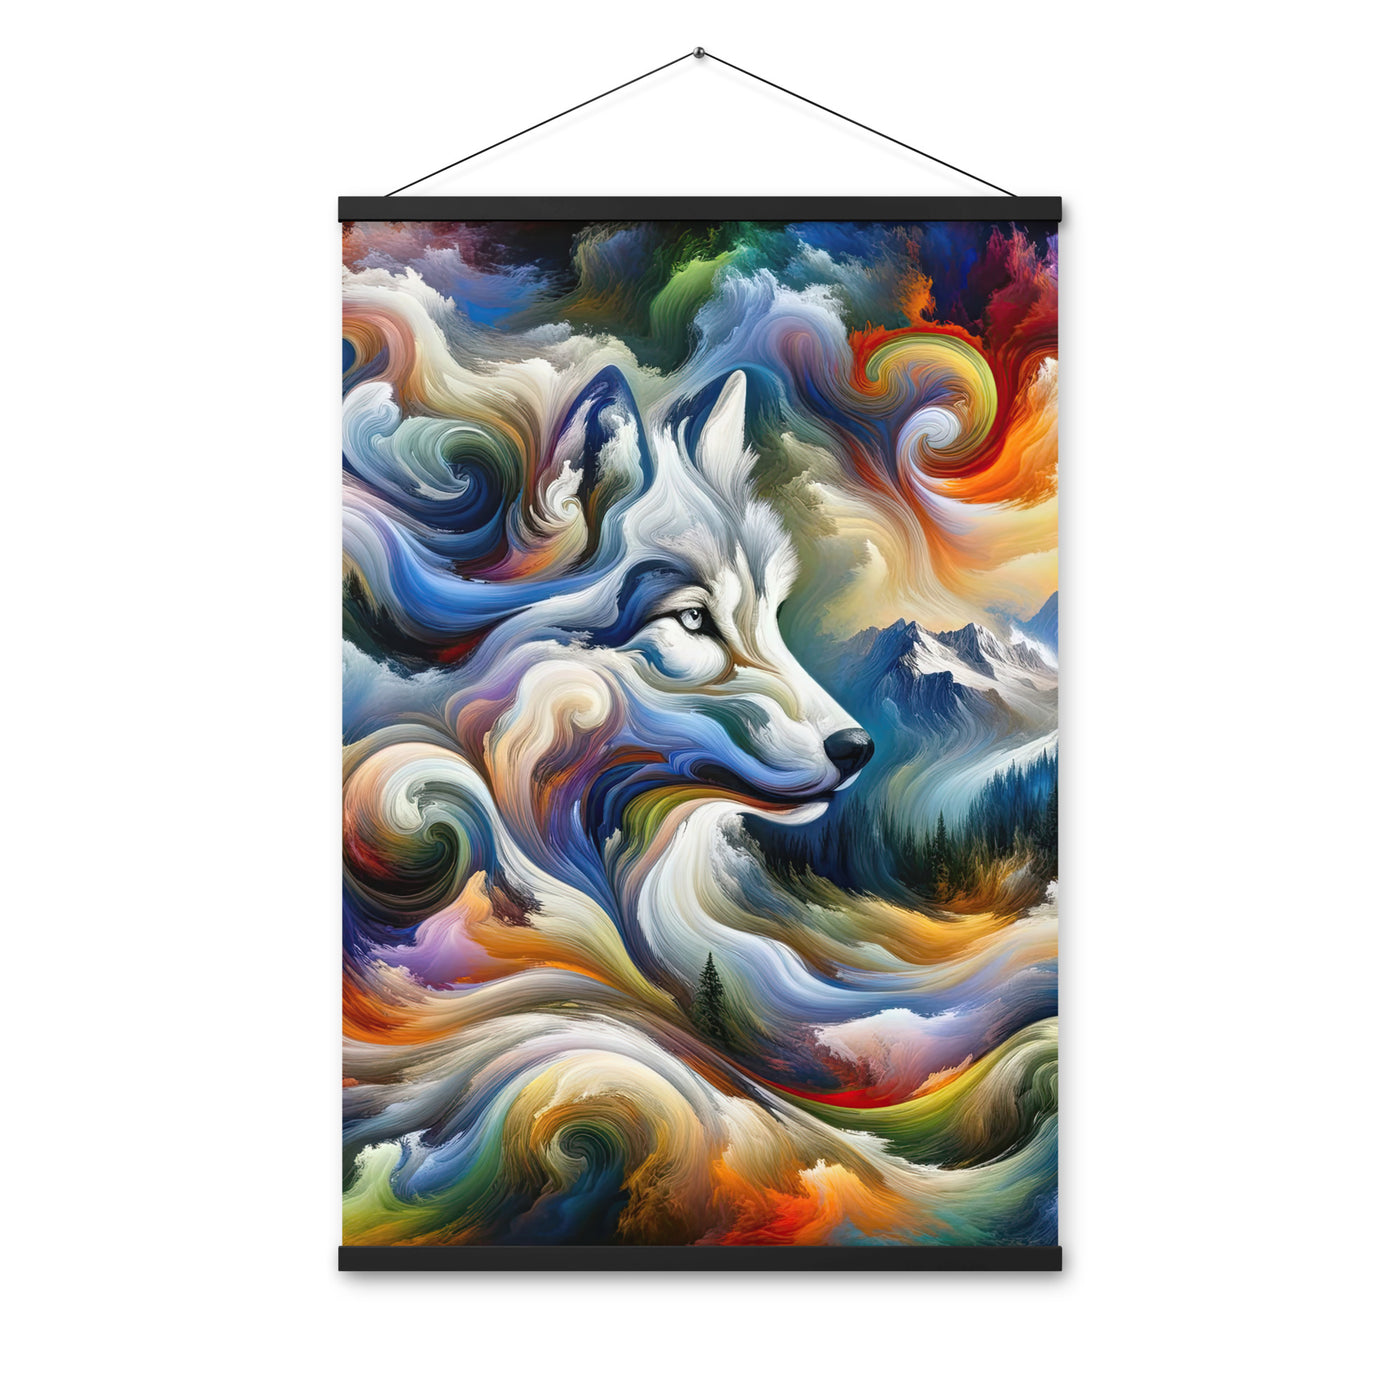 Abstraktes Alpen Gemälde: Wirbelnde Farben und Majestätischer Wolf, Silhouette (AN) - Premium Poster mit Aufhängung xxx yyy zzz 61 x 91.4 cm